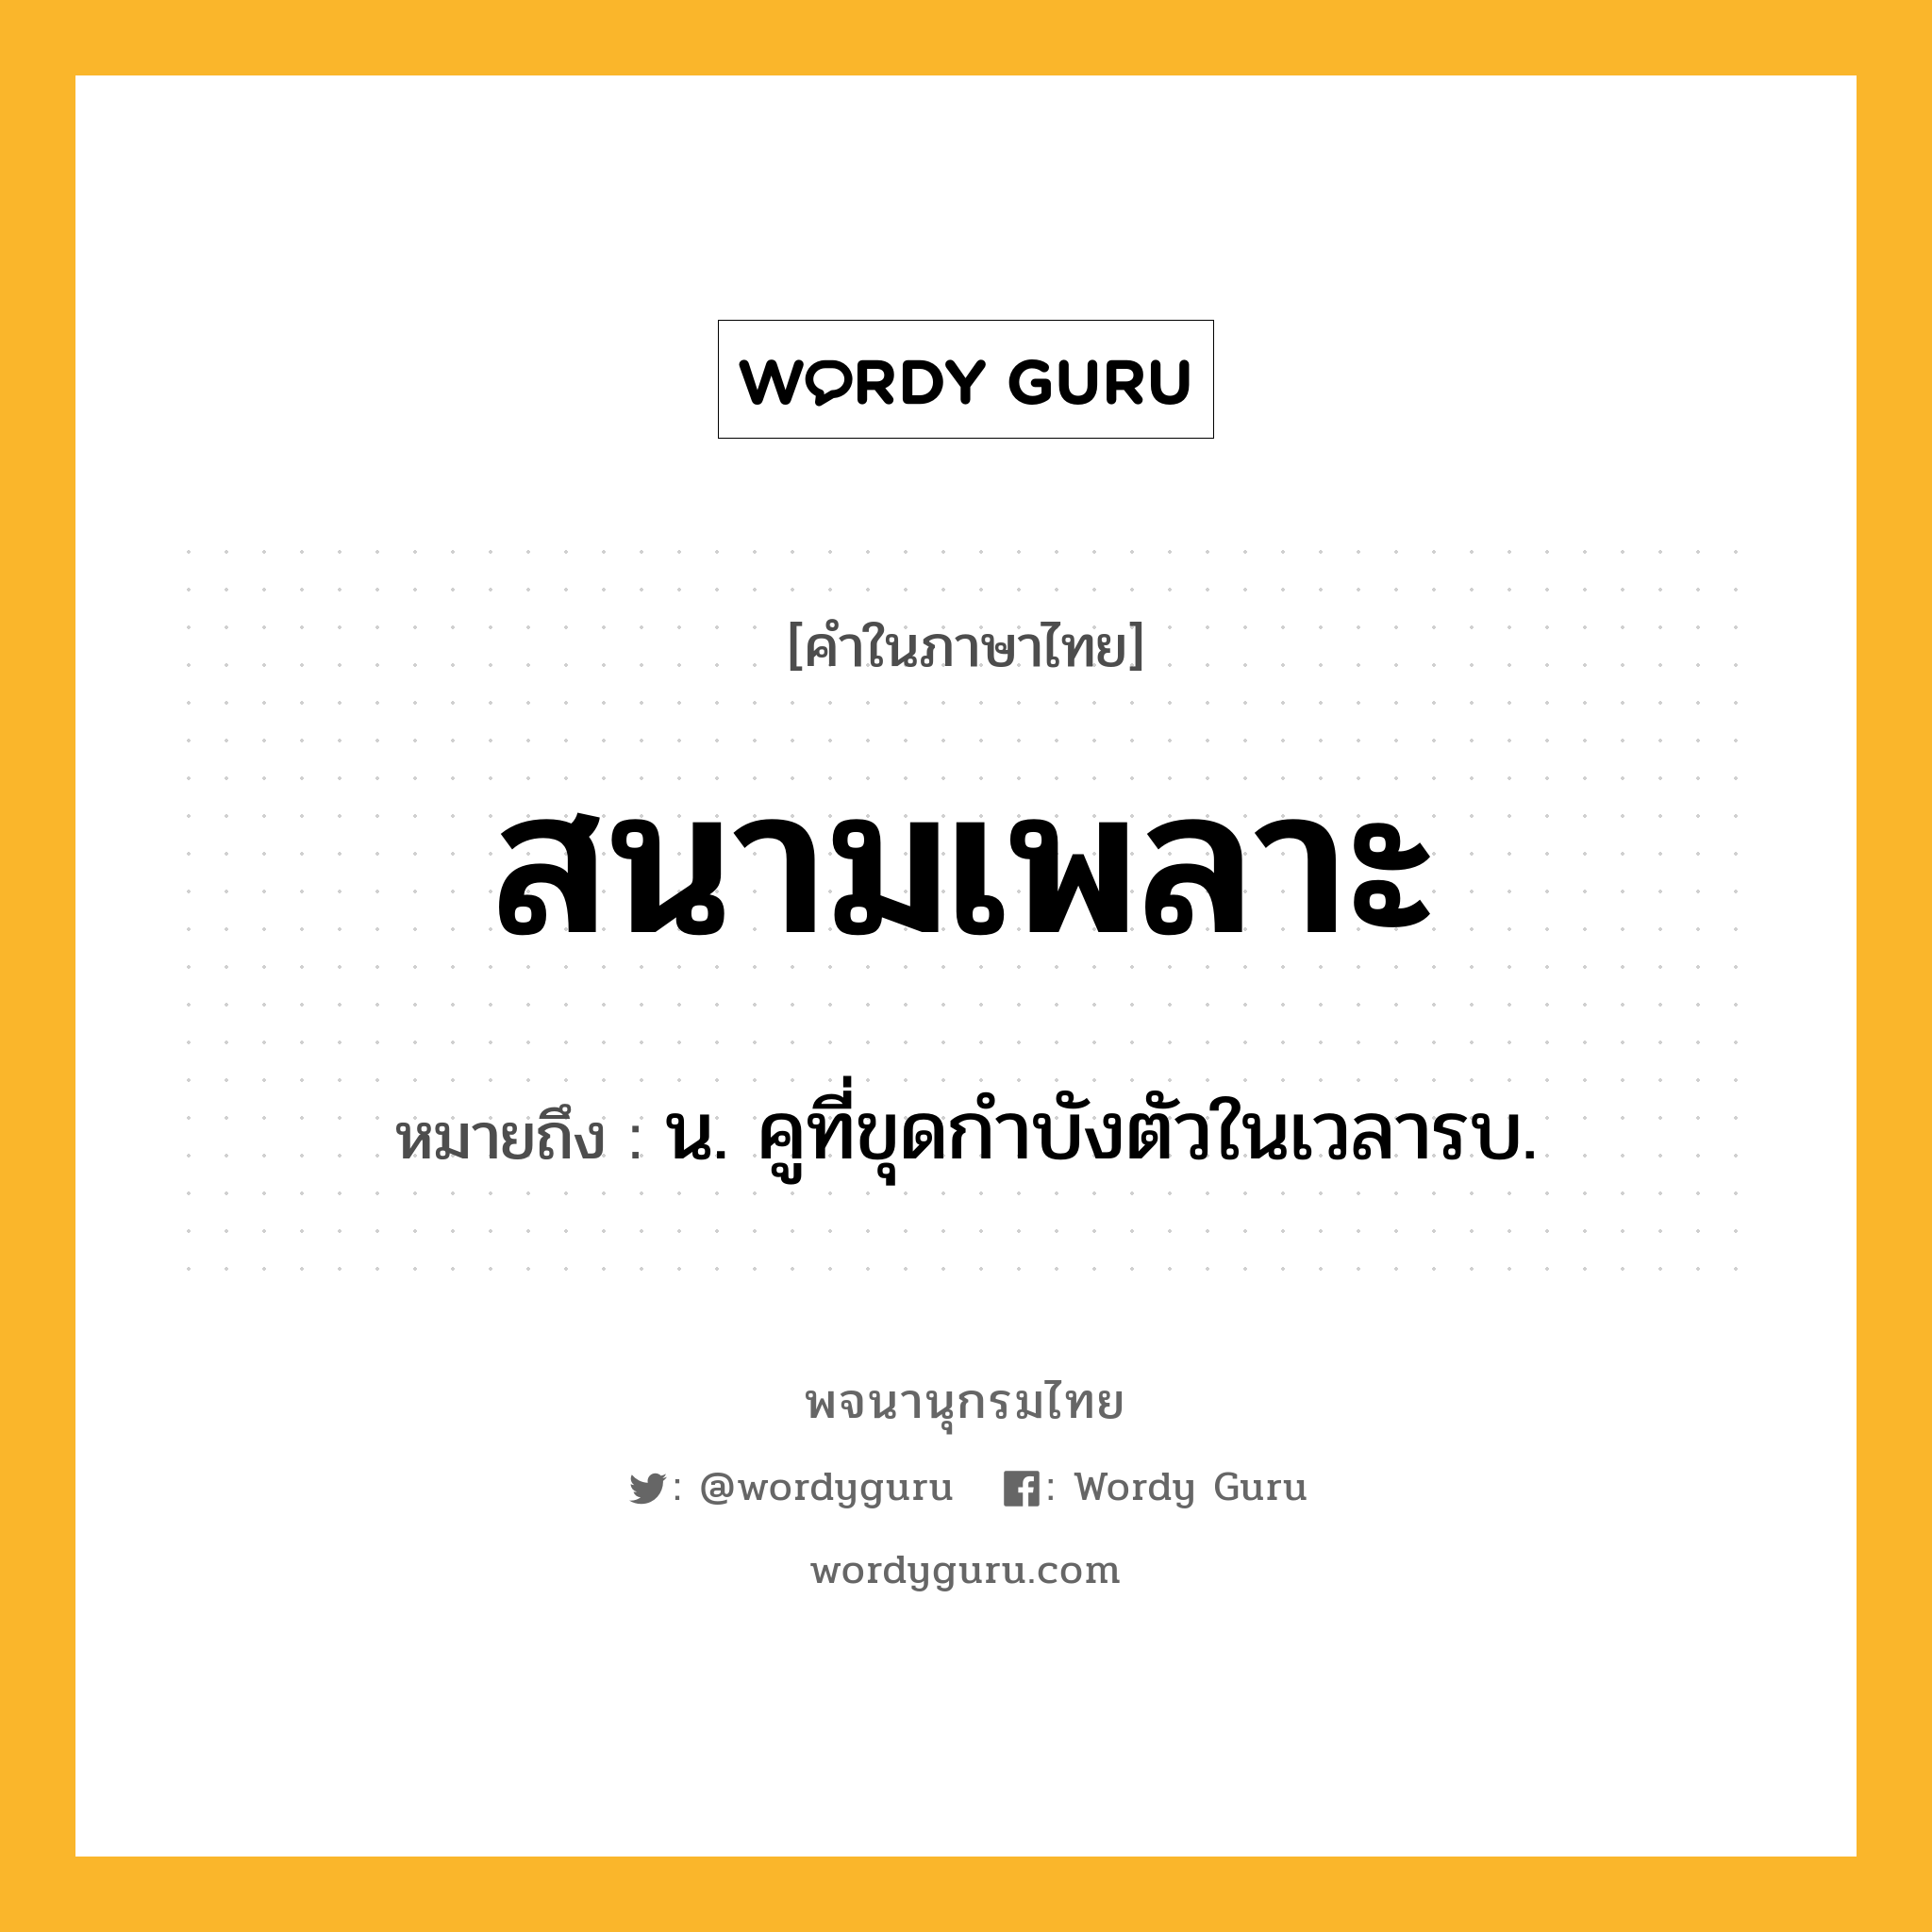 สนามเพลาะ ความหมาย หมายถึงอะไร?, คำในภาษาไทย สนามเพลาะ หมายถึง น. คูที่ขุดกำบังตัวในเวลารบ.